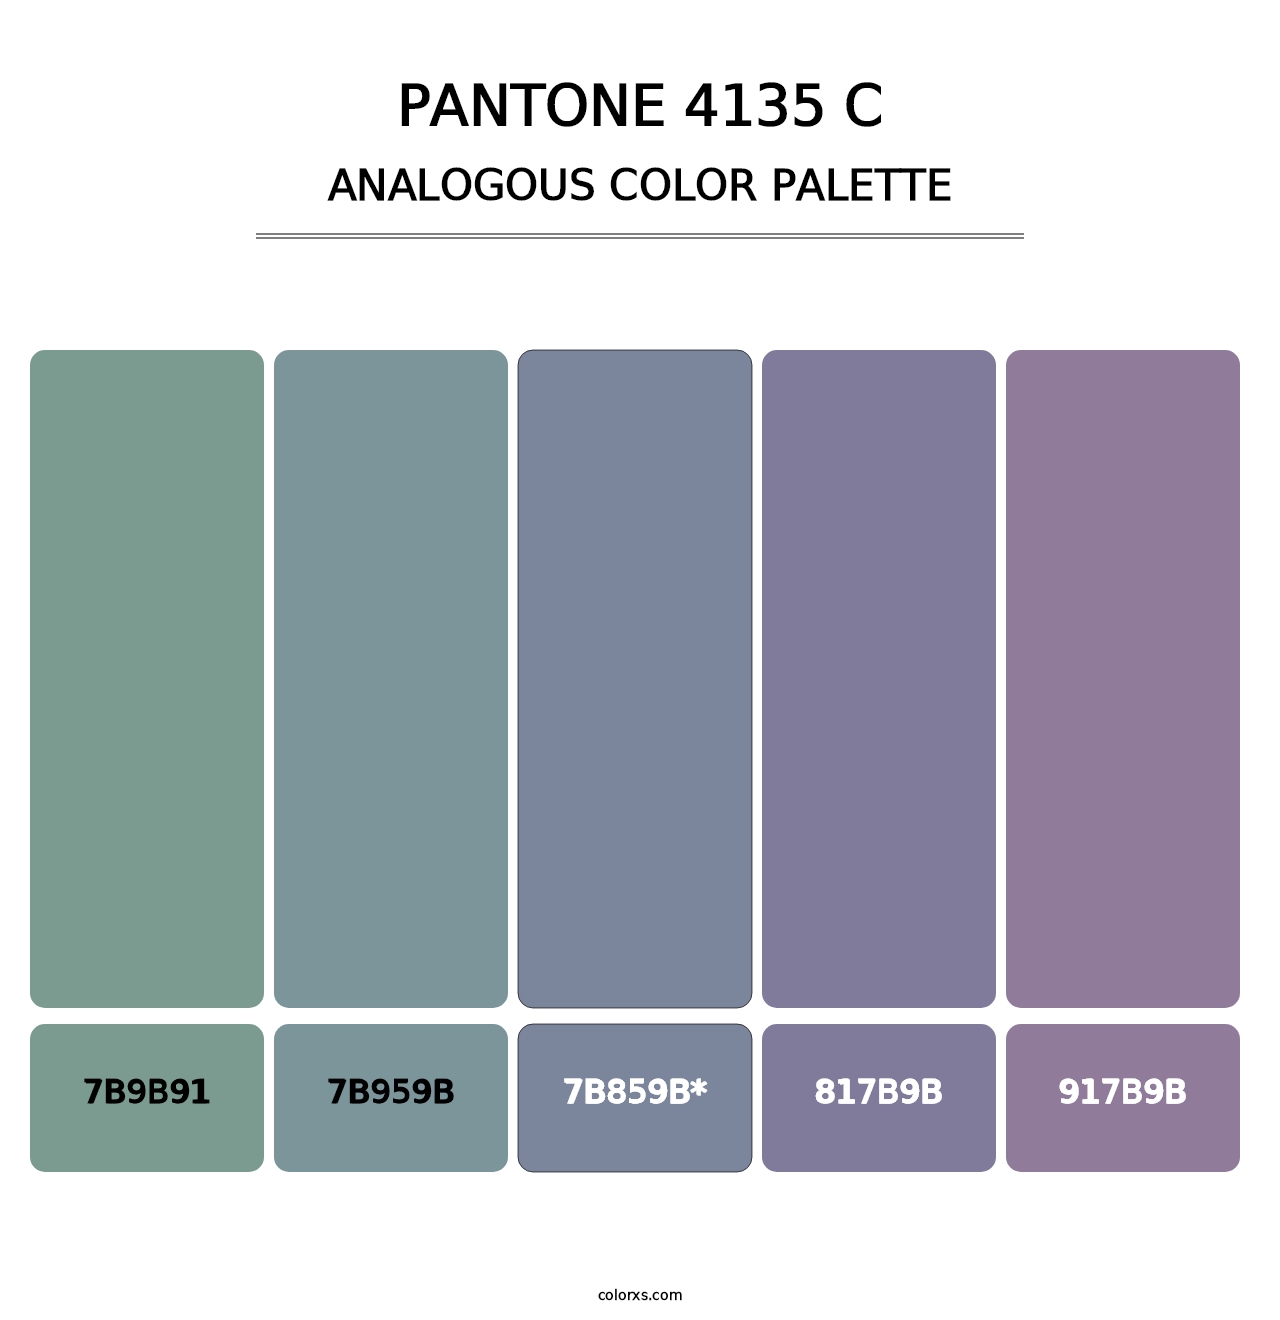 PANTONE 4135 C - Analogous Color Palette